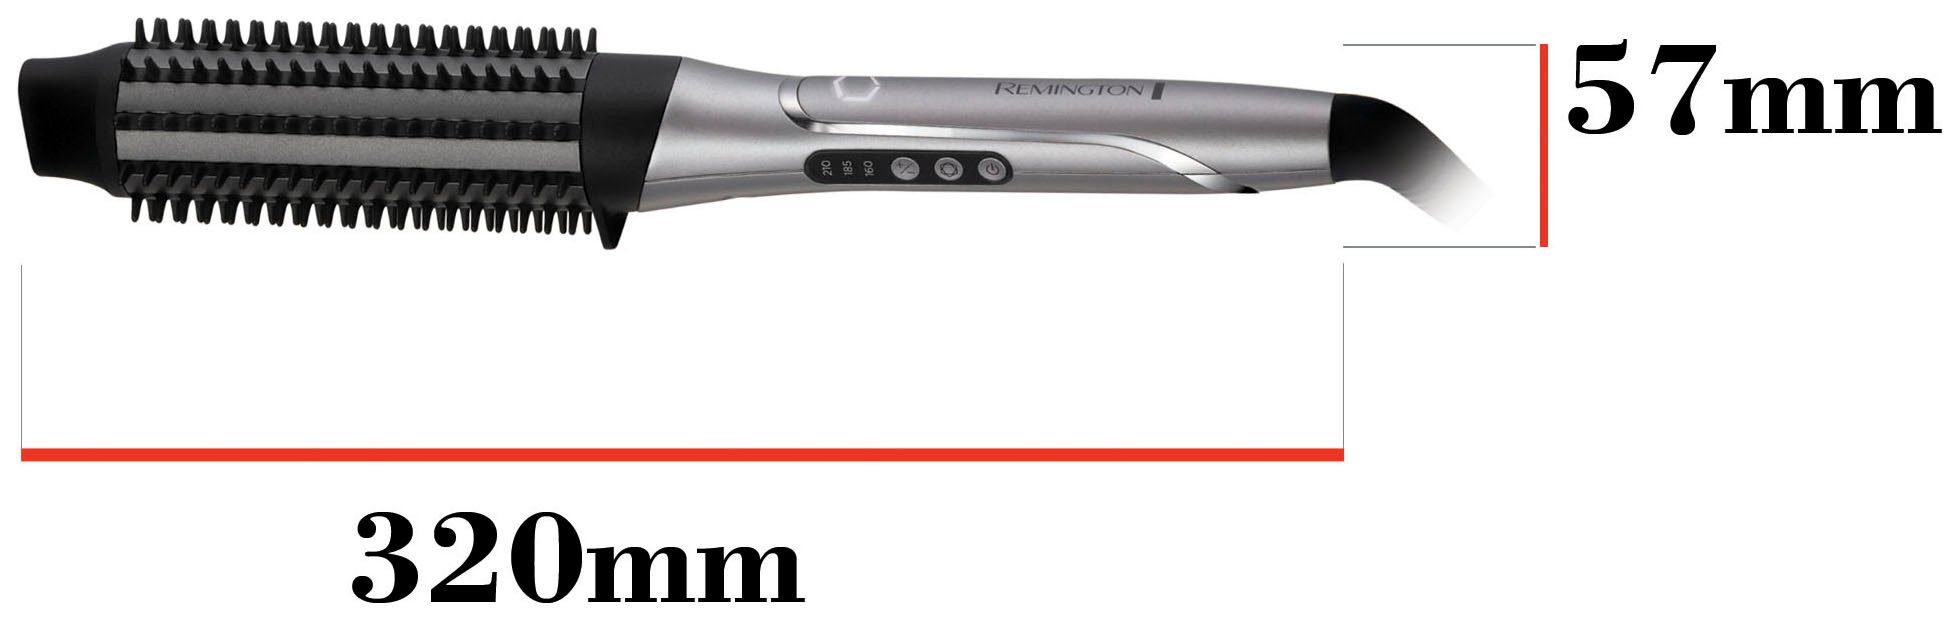 Remington Warmluftbürste You PROluxe personalisiert Hitze Airstyler/Rund-&Warmluftbürste) CB9800, Volumenbürste (lernfähiger